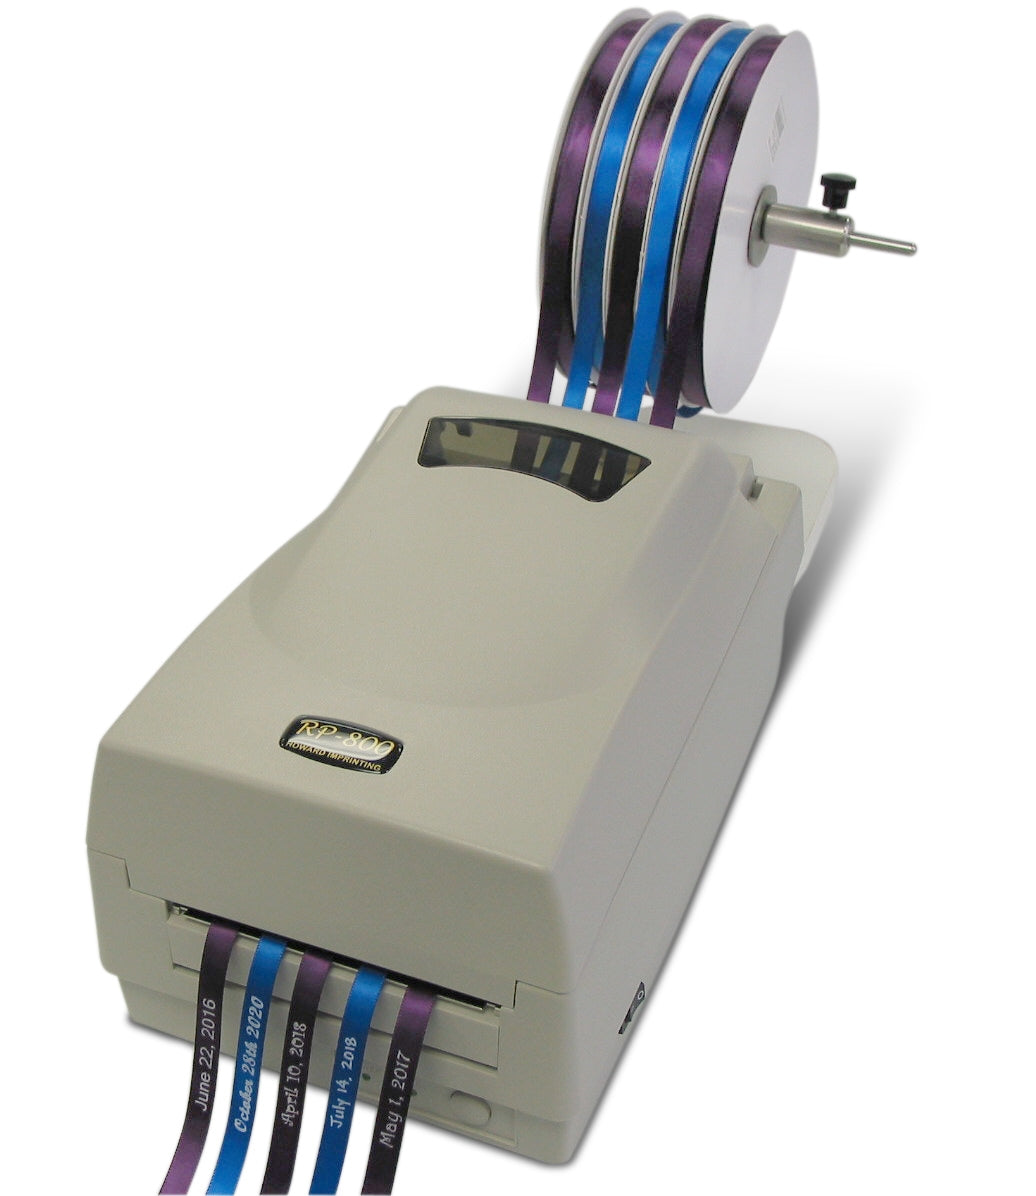 Ribbon Printer RP-800 - Printer Only